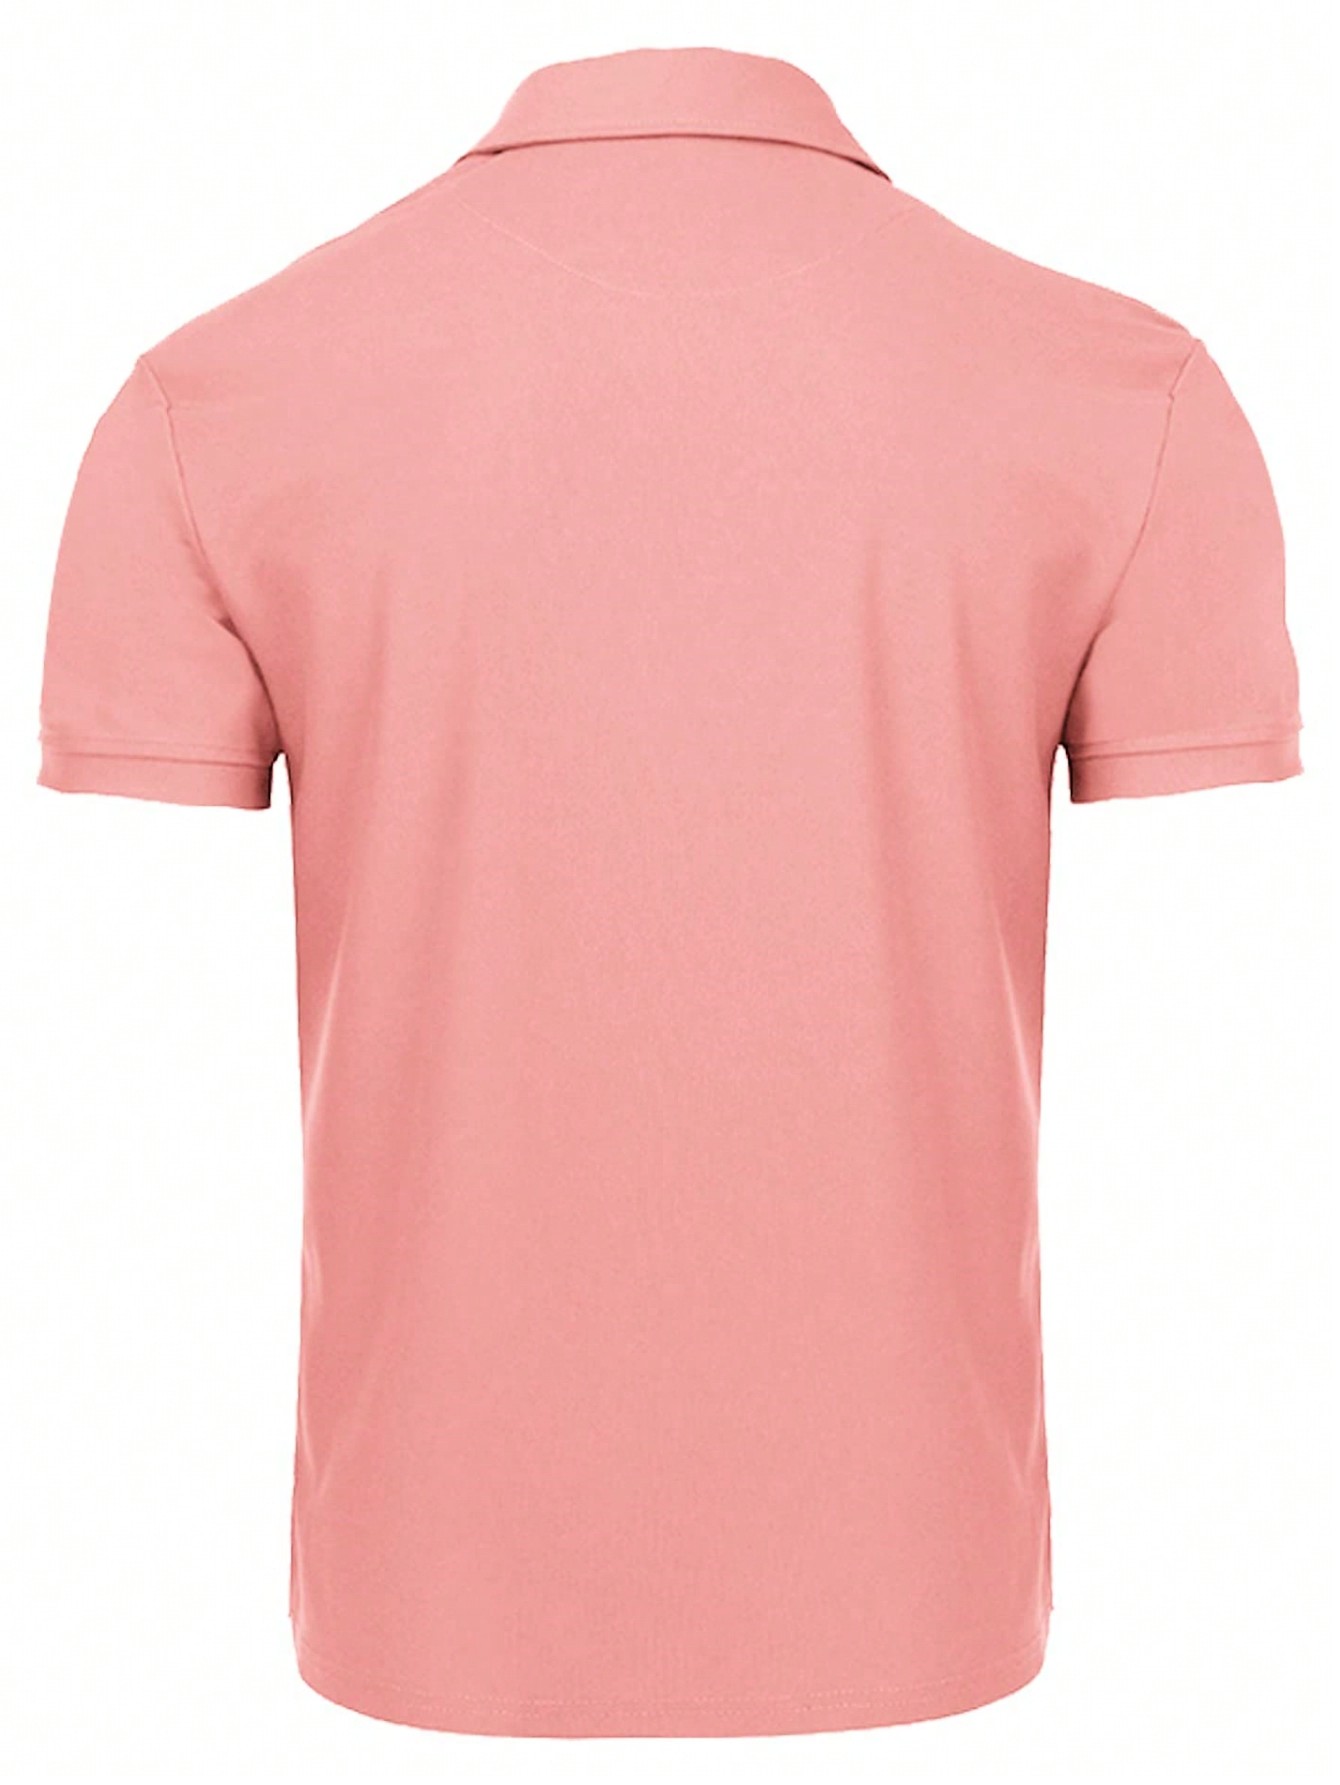 Мужская рубашка поло с коротким рукавом для отдыха, арбуз розовый женская футболка с коротким рукавом быстросохнущая дышащая облегающая футболка для гольфа